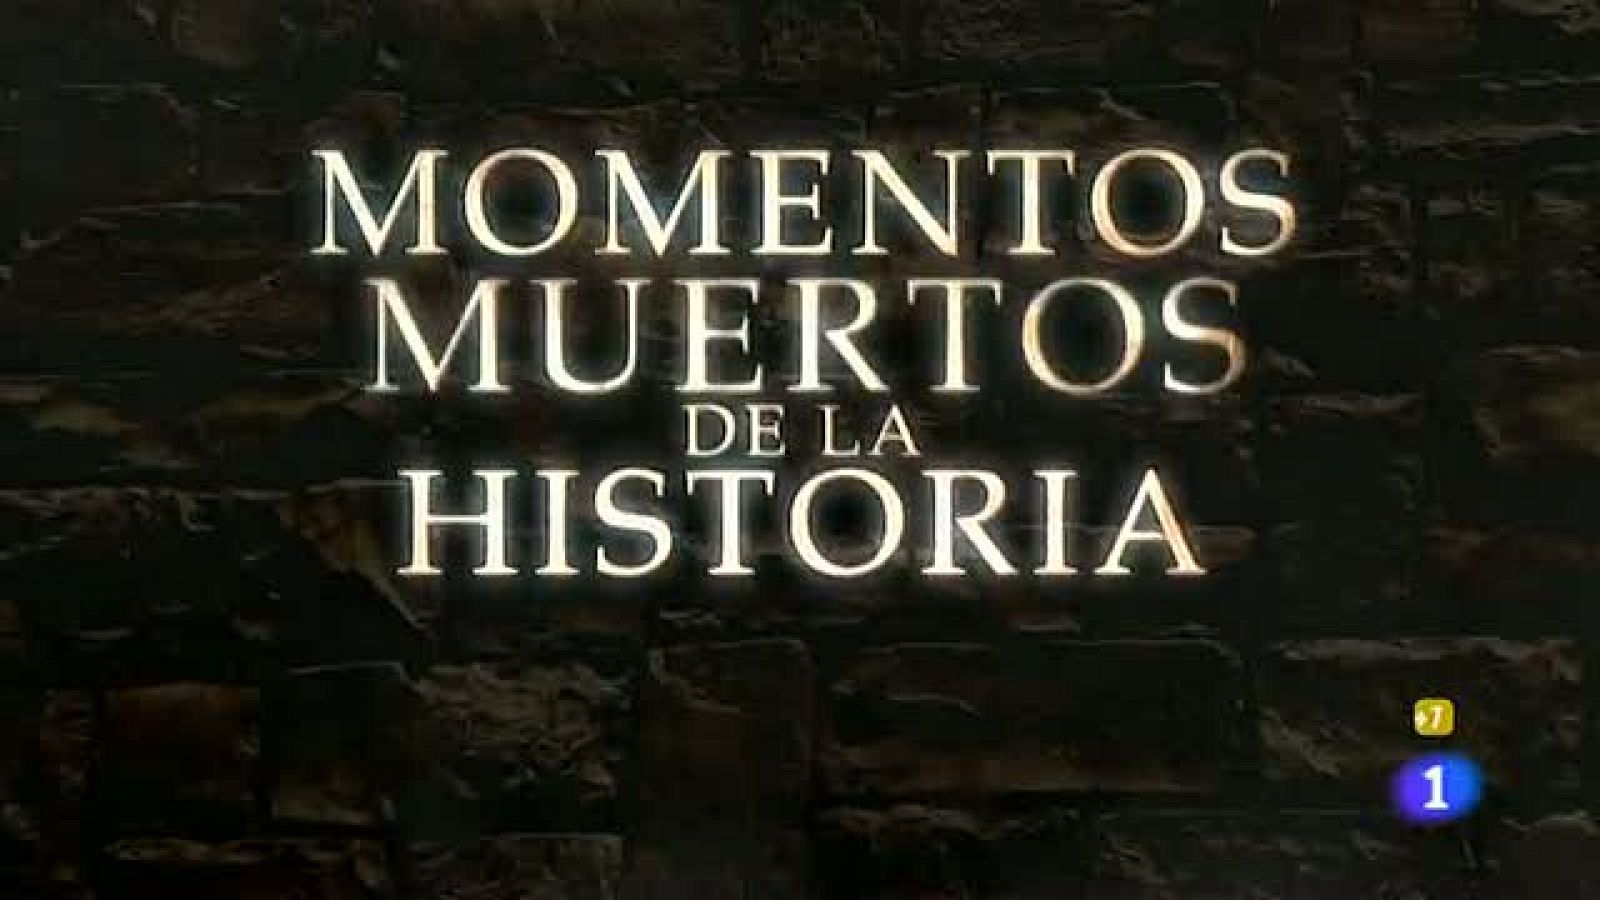 La Hora de José Mota - Cada loco con su tema - Momentos muertos de la historia